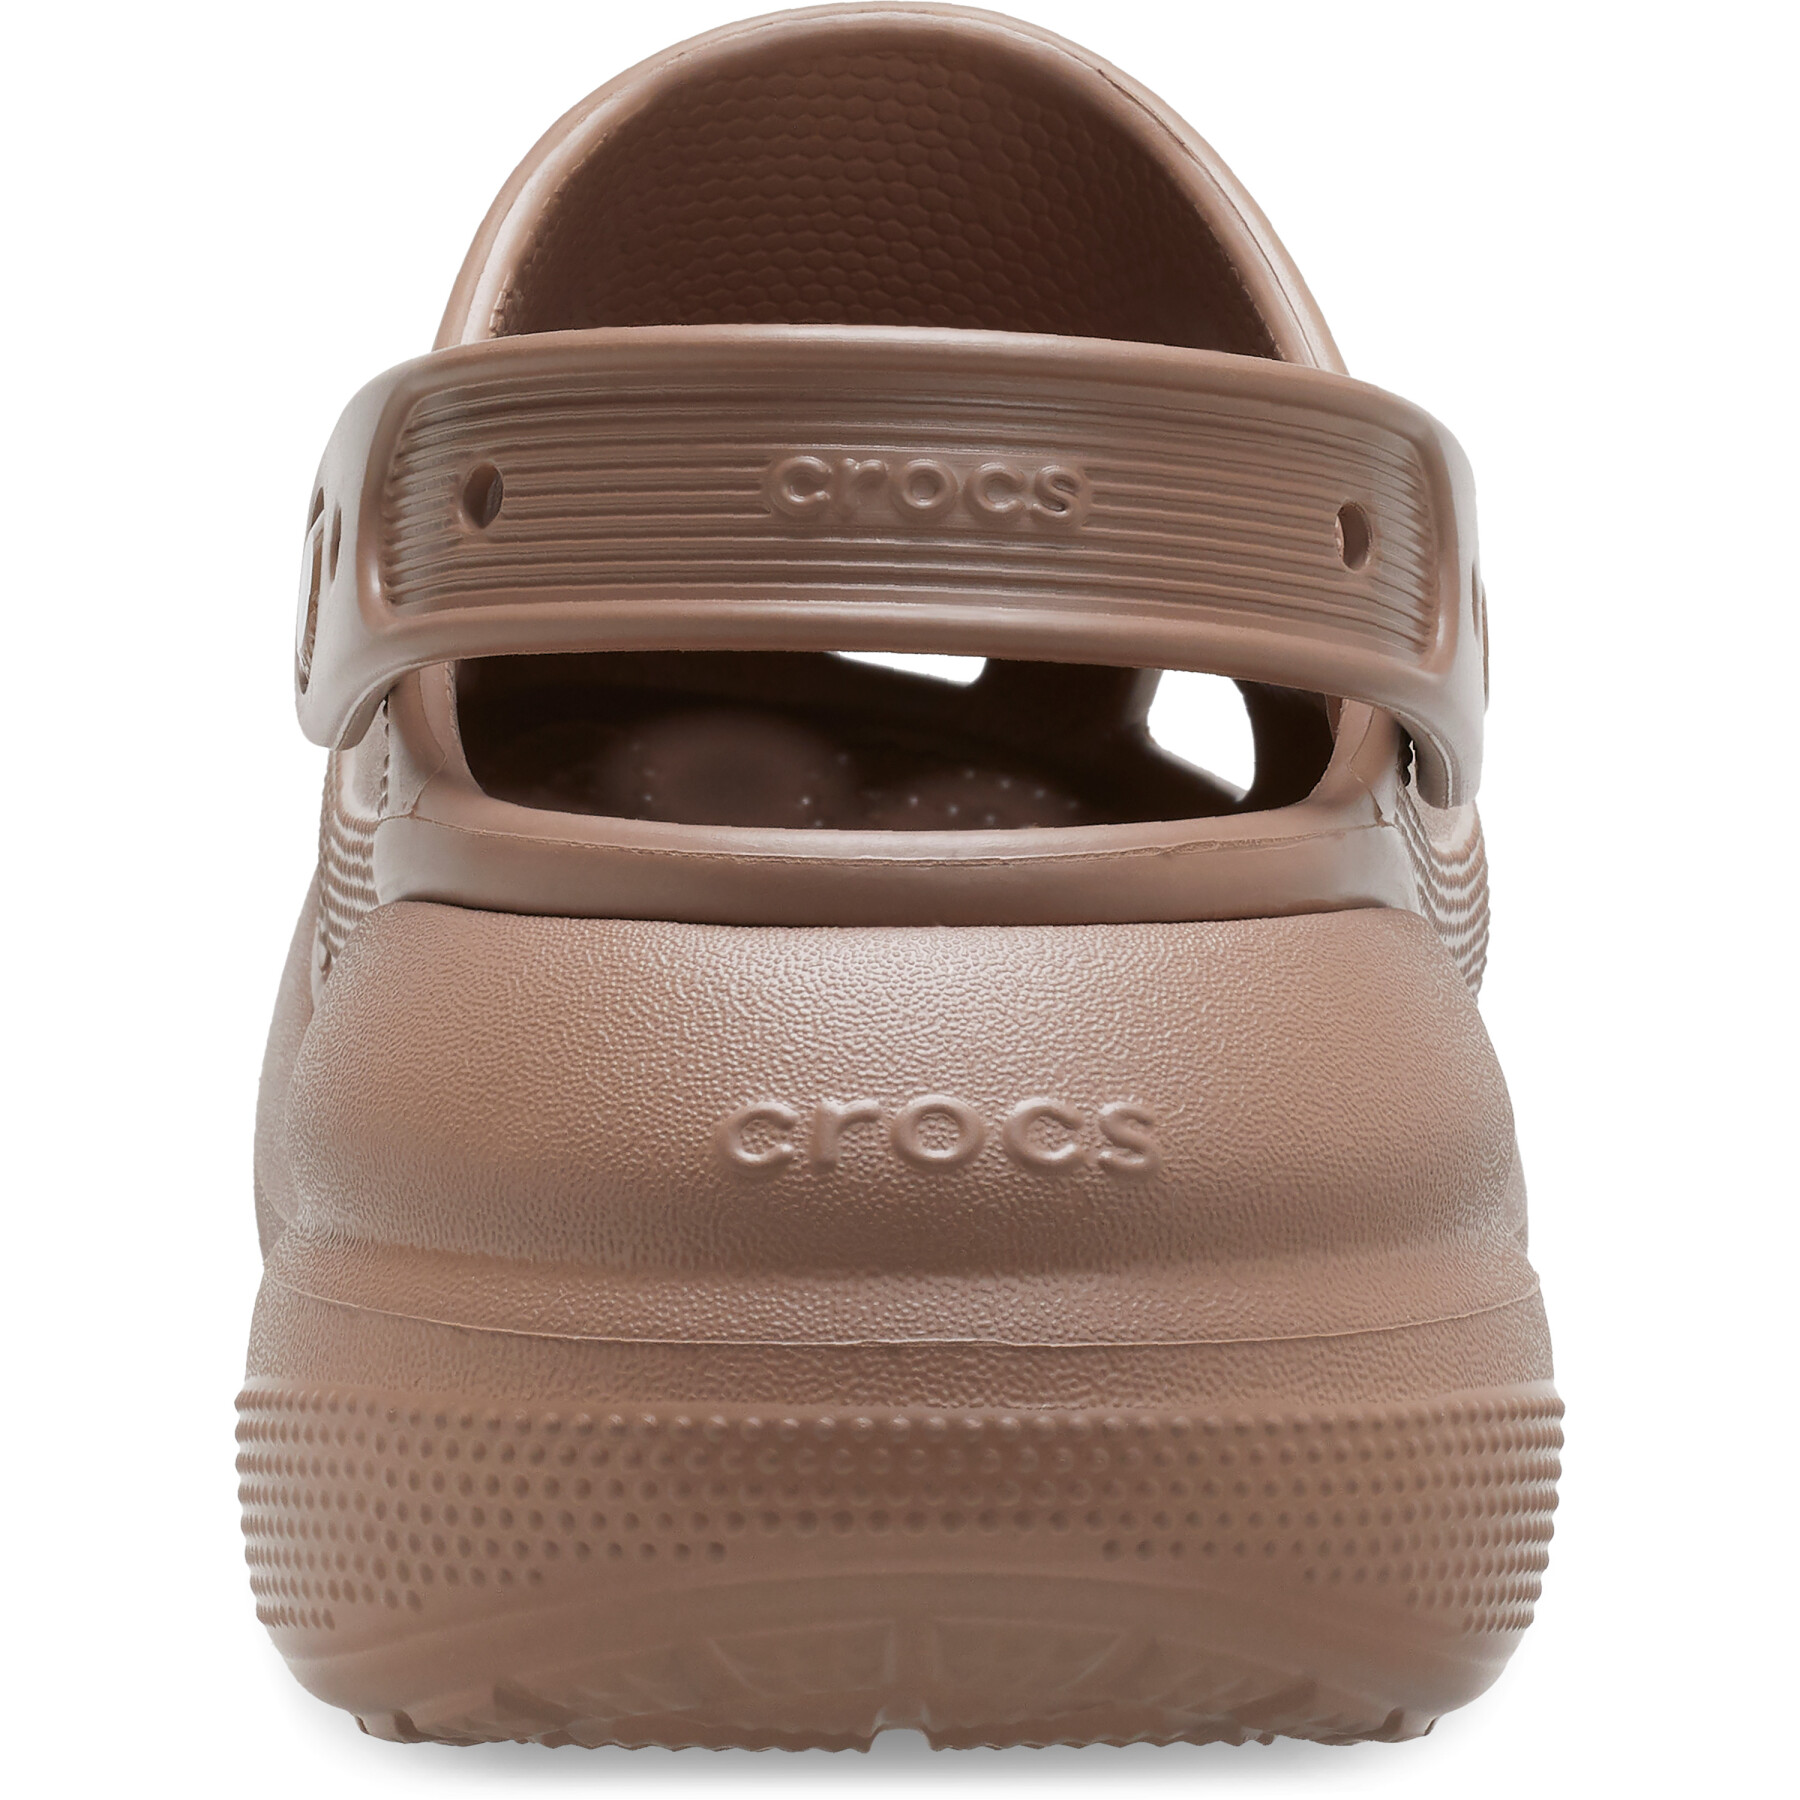 Clogs Crocs Crush